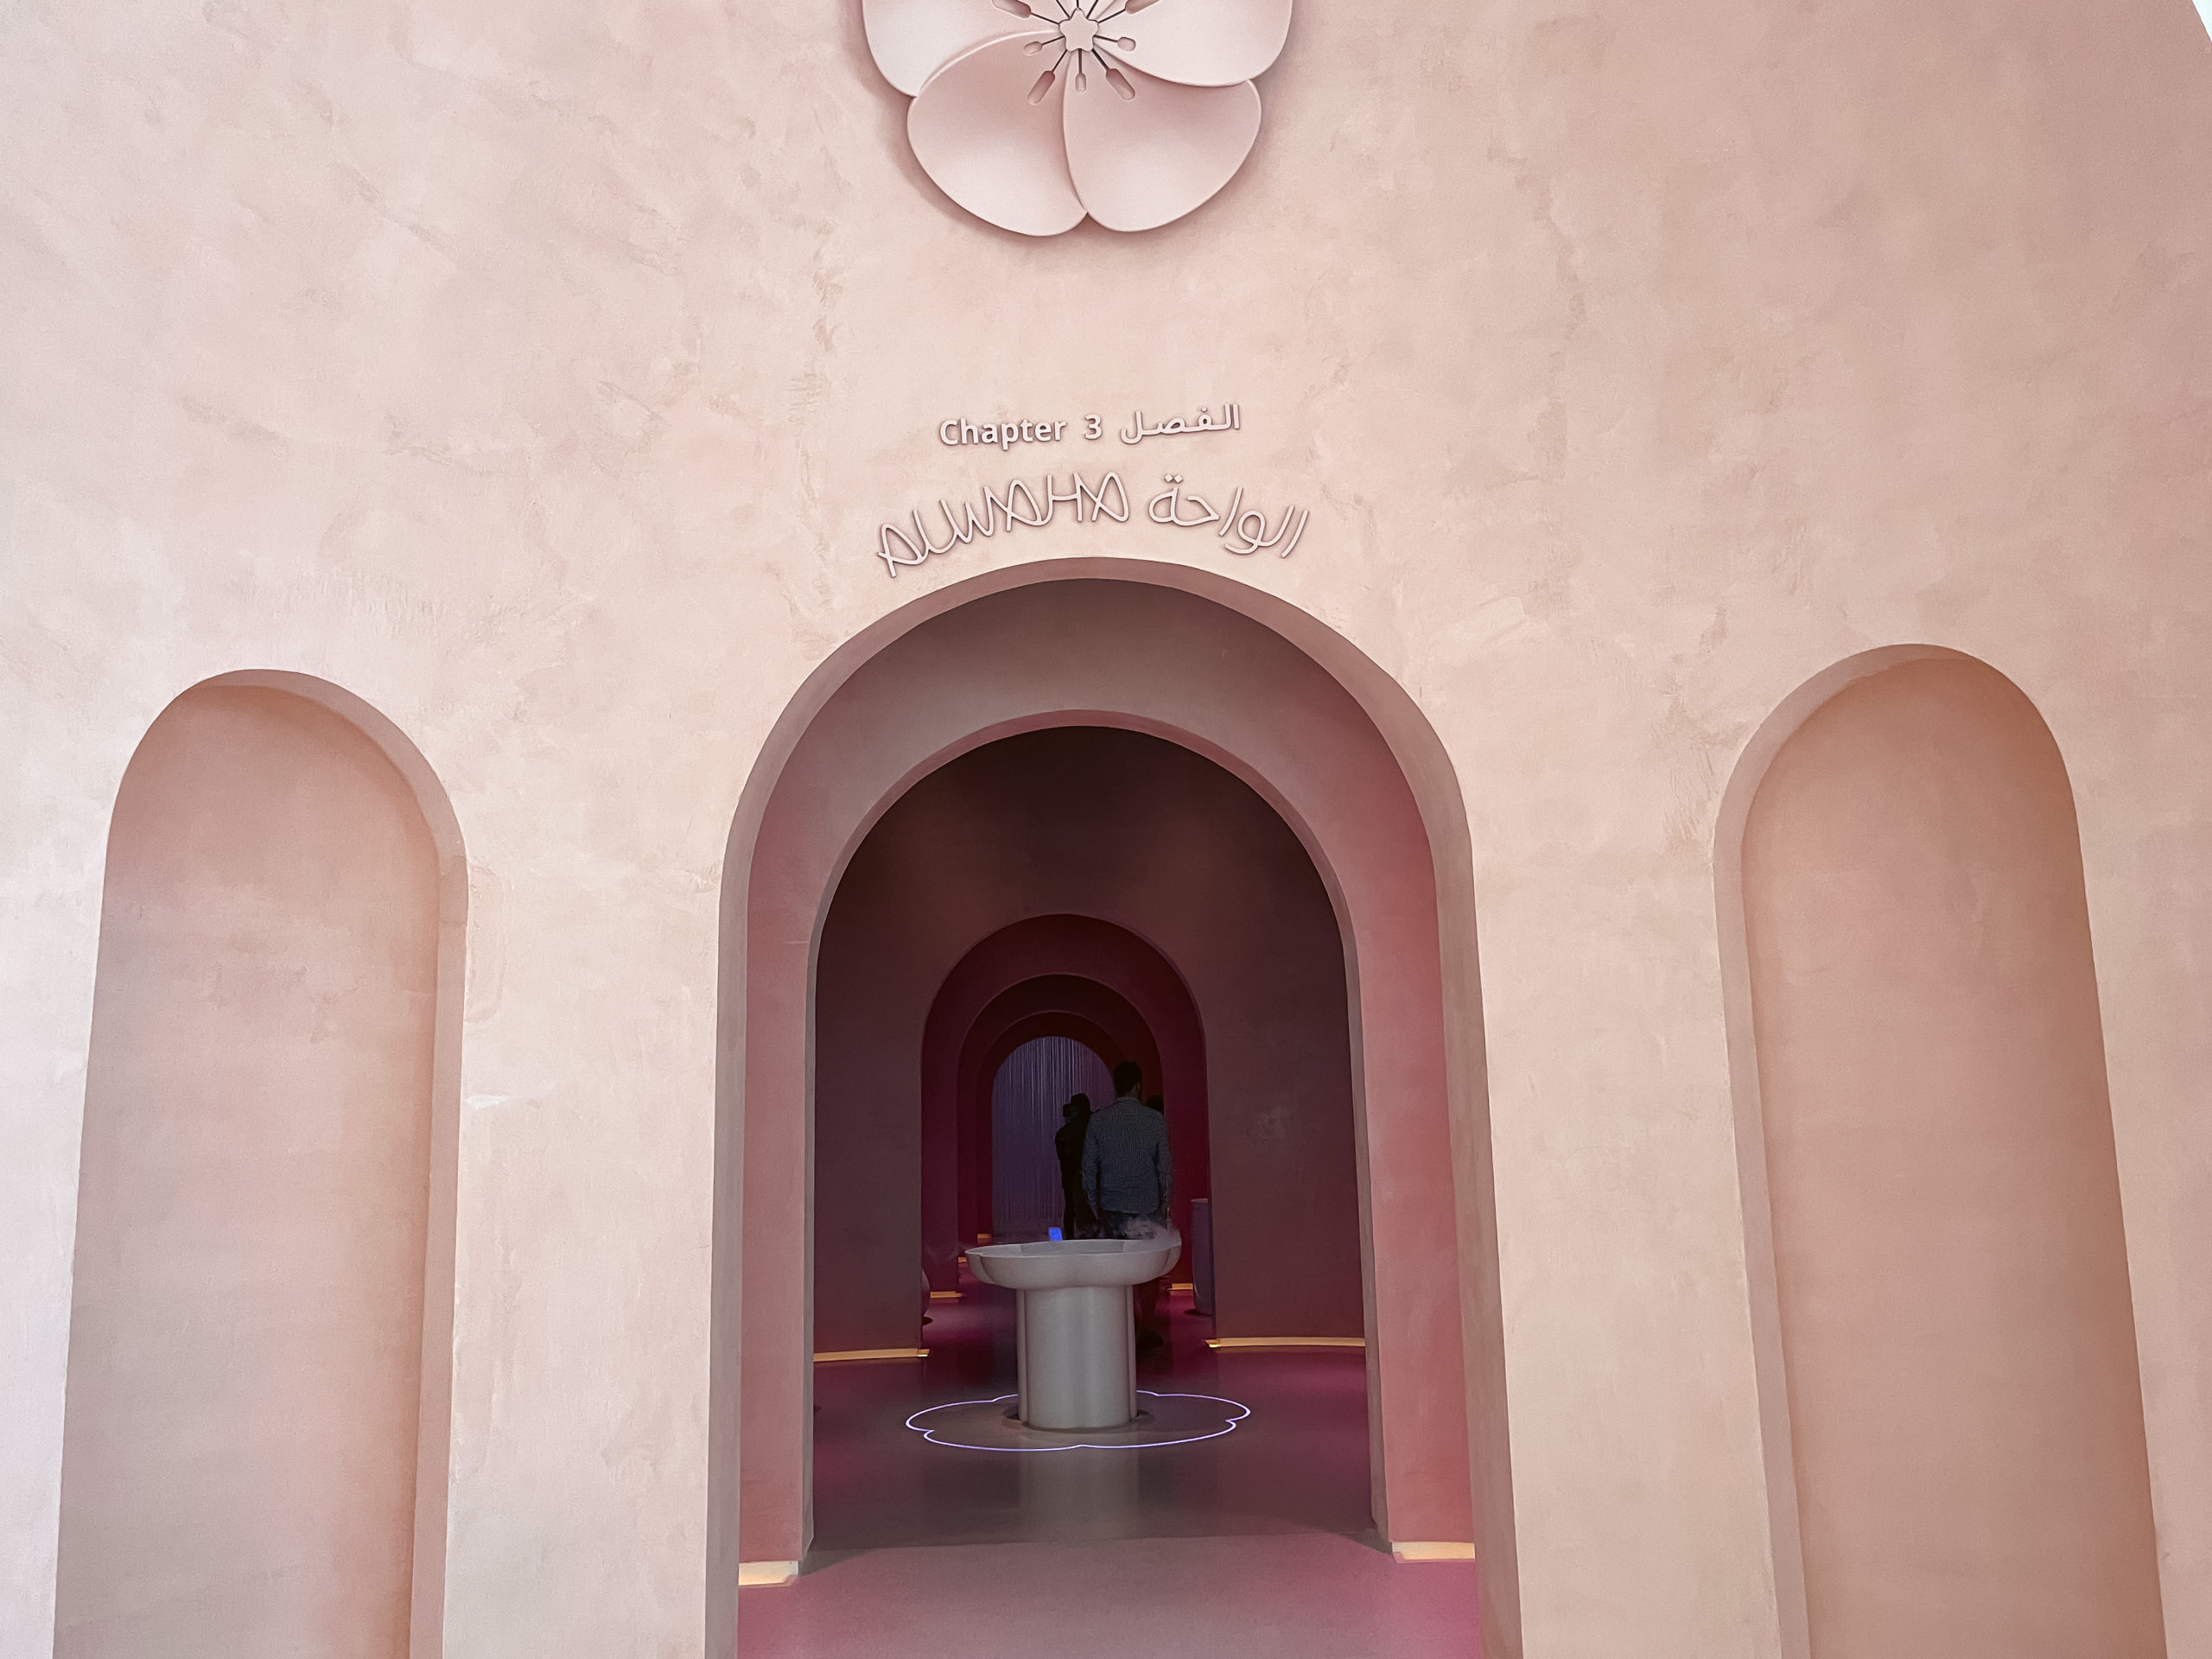 Al Waha, Museum of the Future